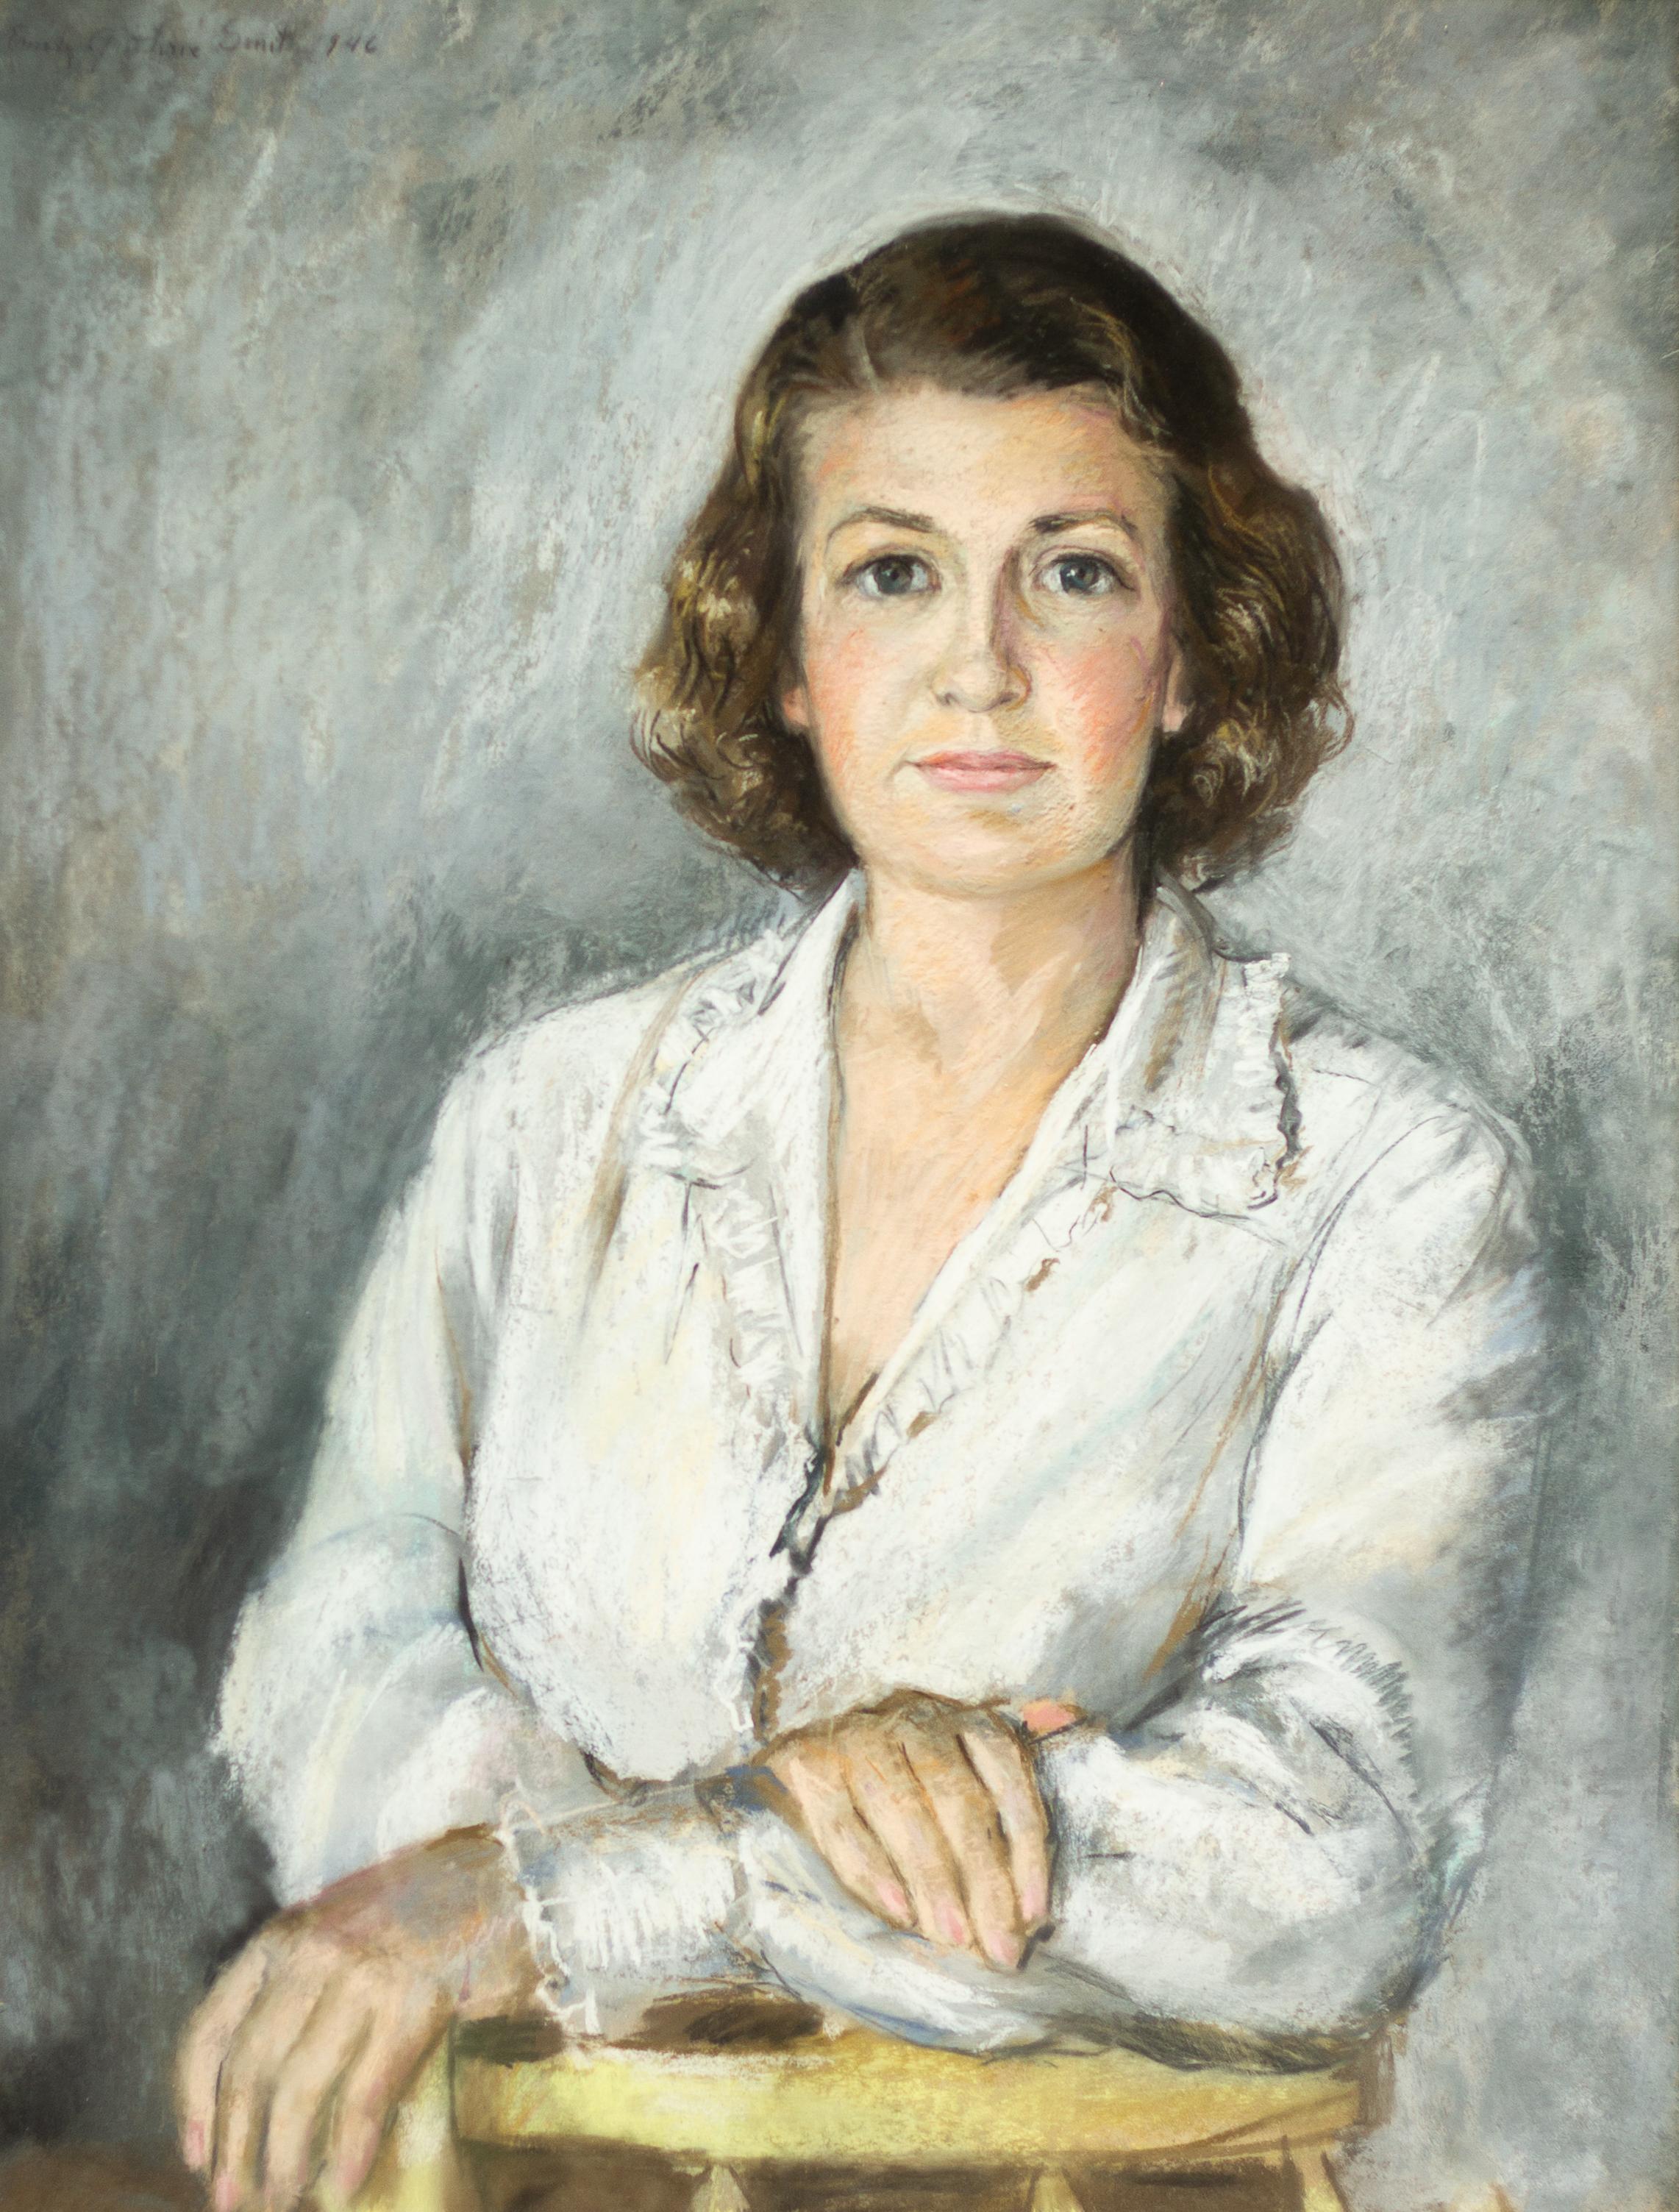 Portrait of a Woman 